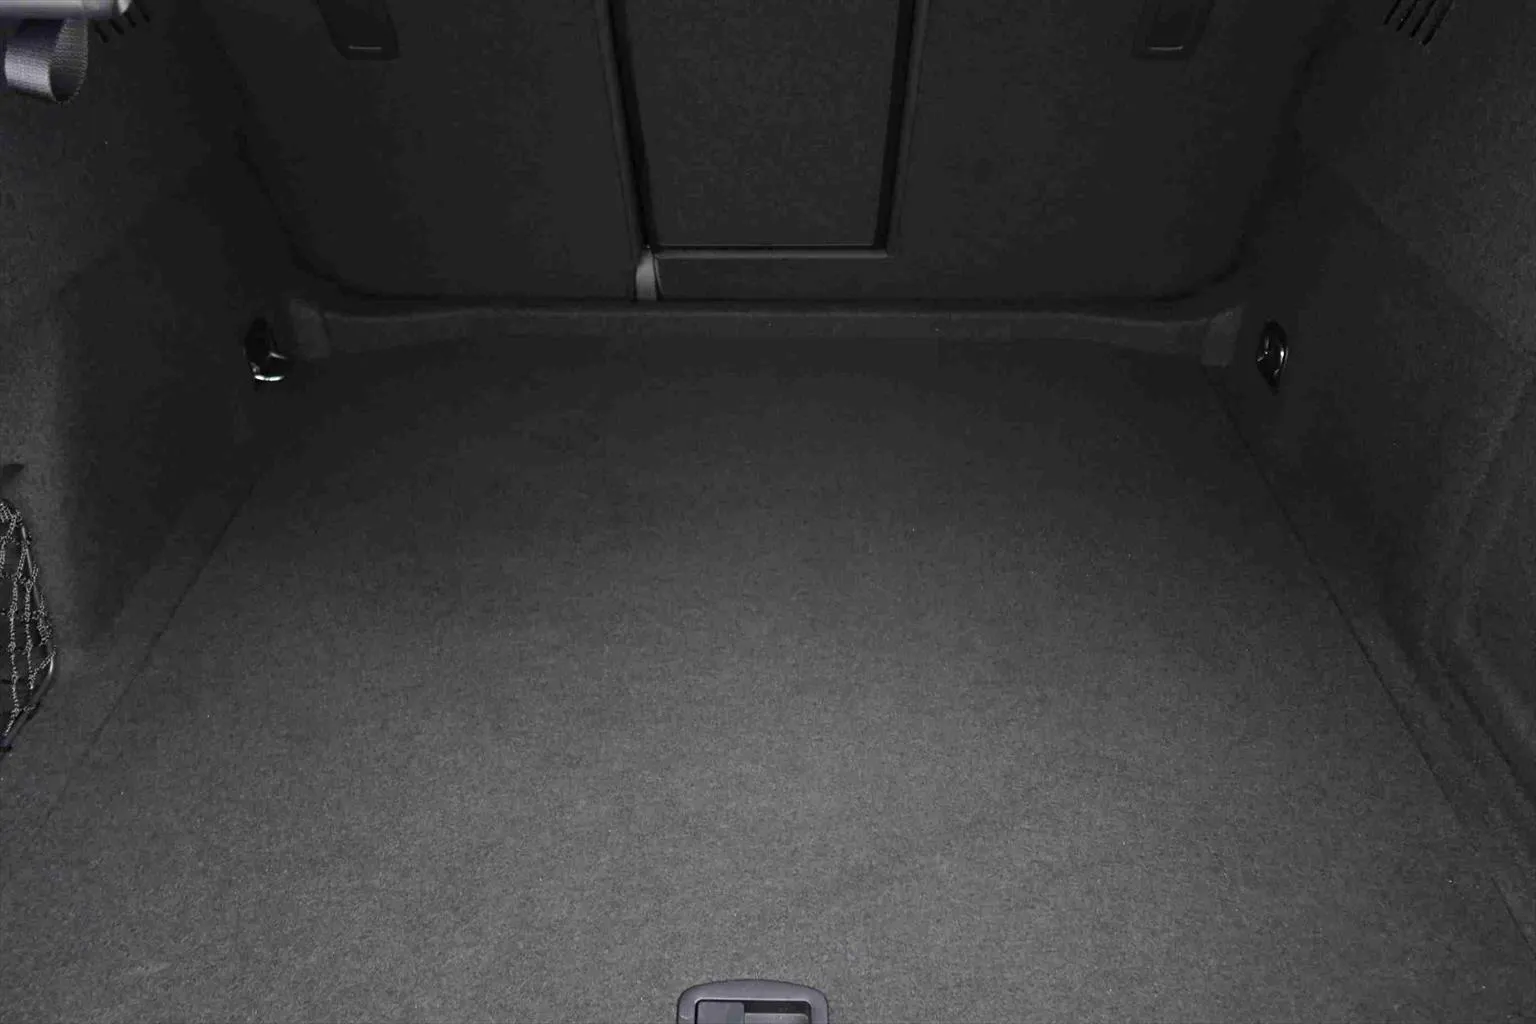 Audi S3 Limousine 2.0 TFSI quattro Magnetic Ride  Image 8